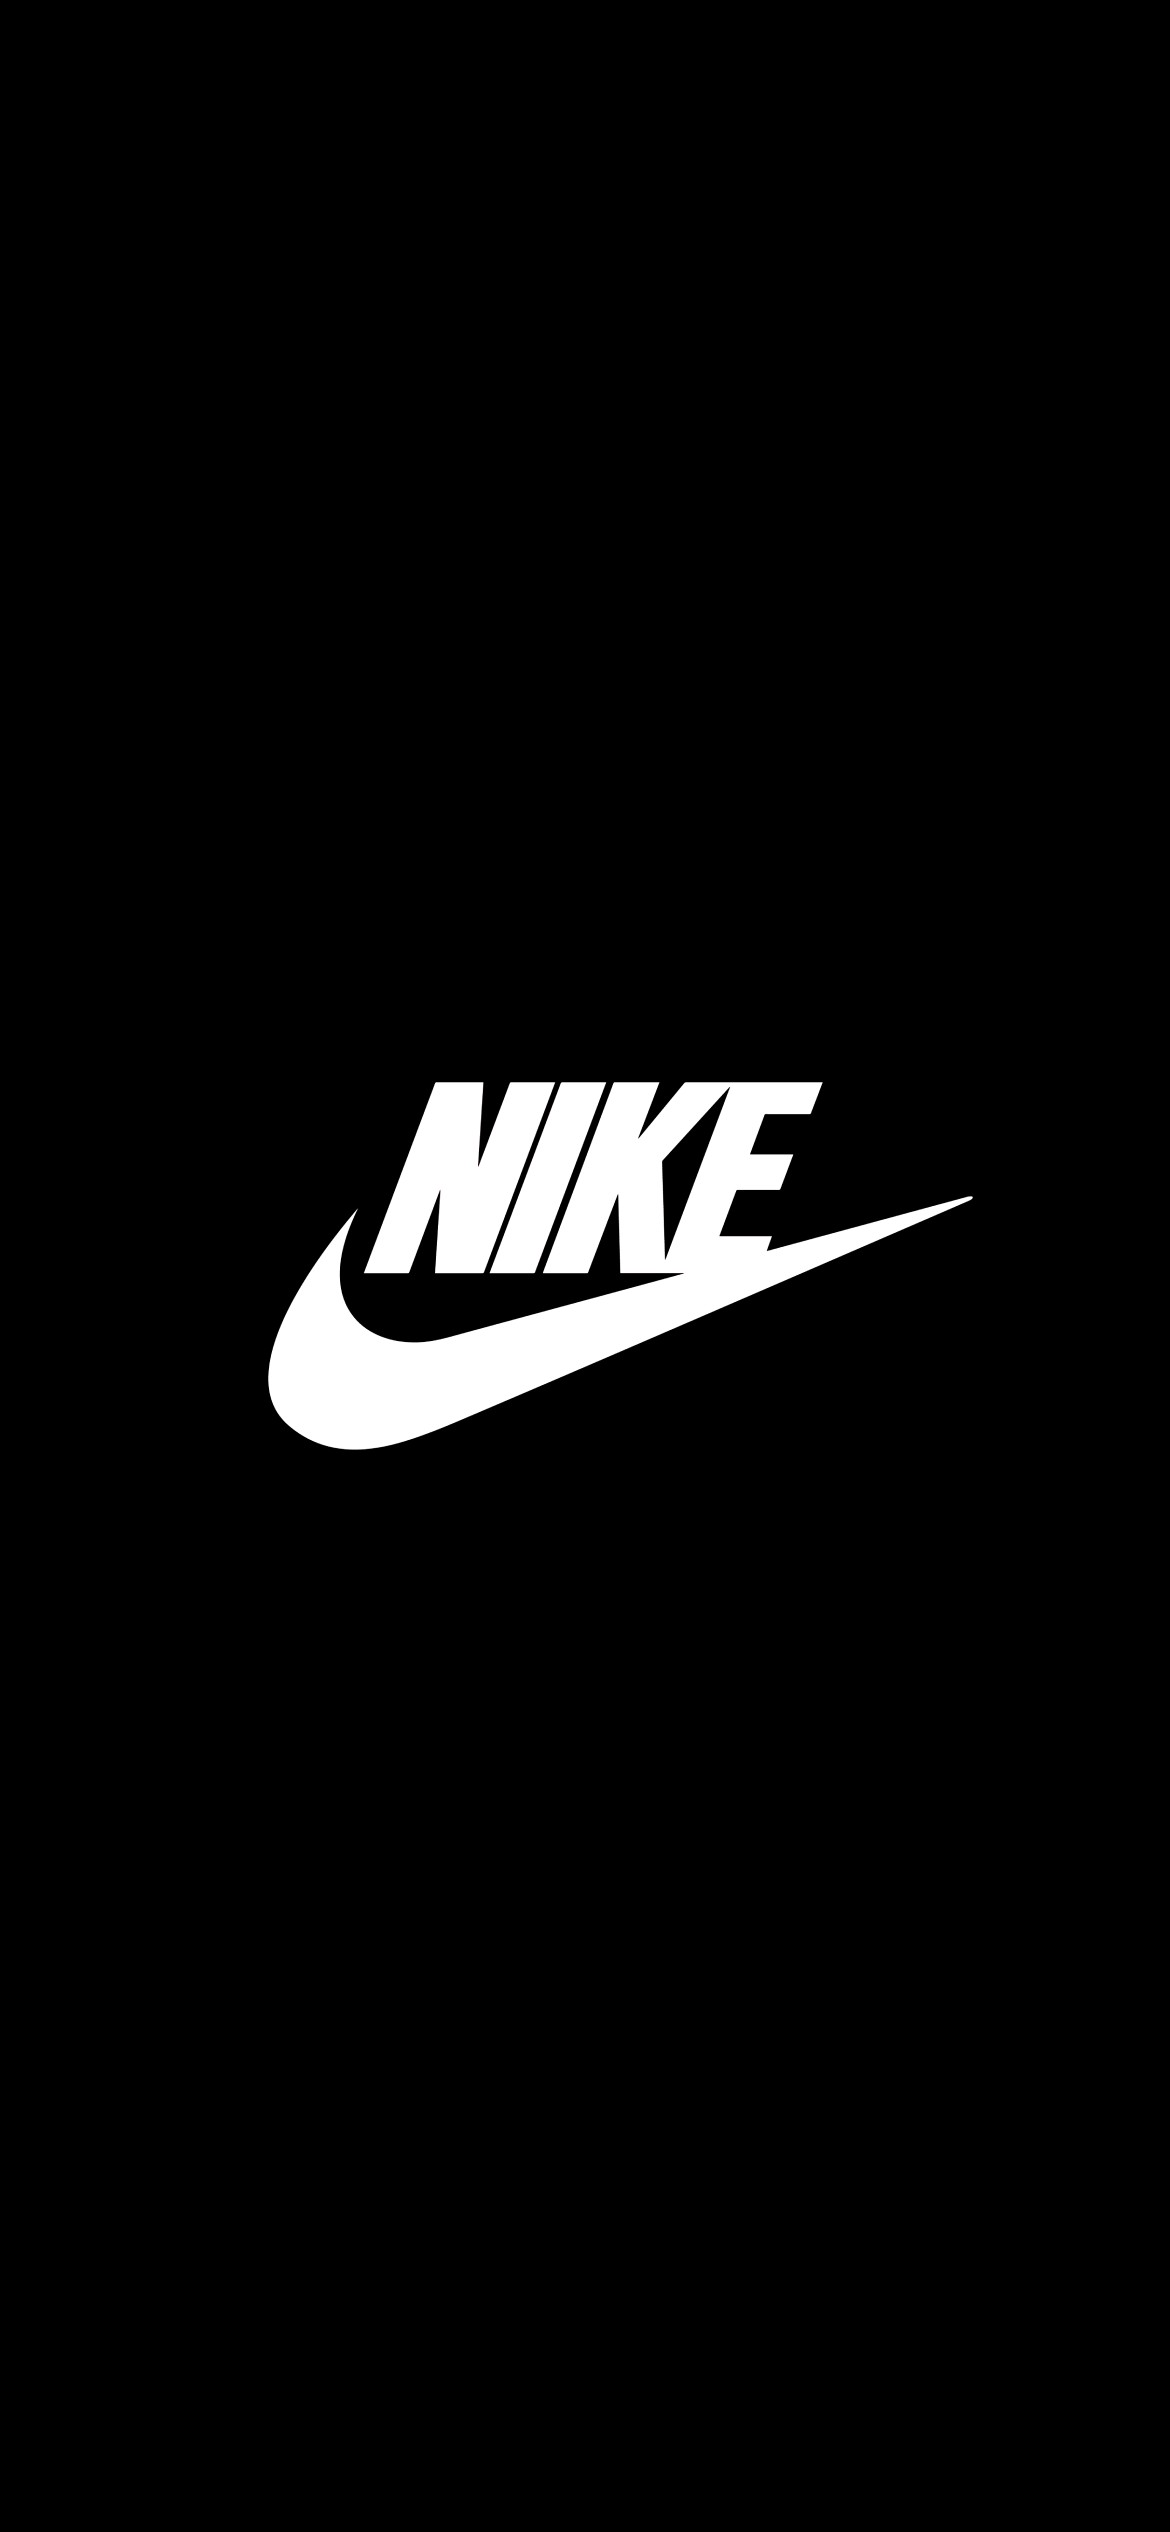 マリメッコ おもしろ グッズ 韓国 ドラマ Nike 可愛い 壁紙 Shinkowt Jp